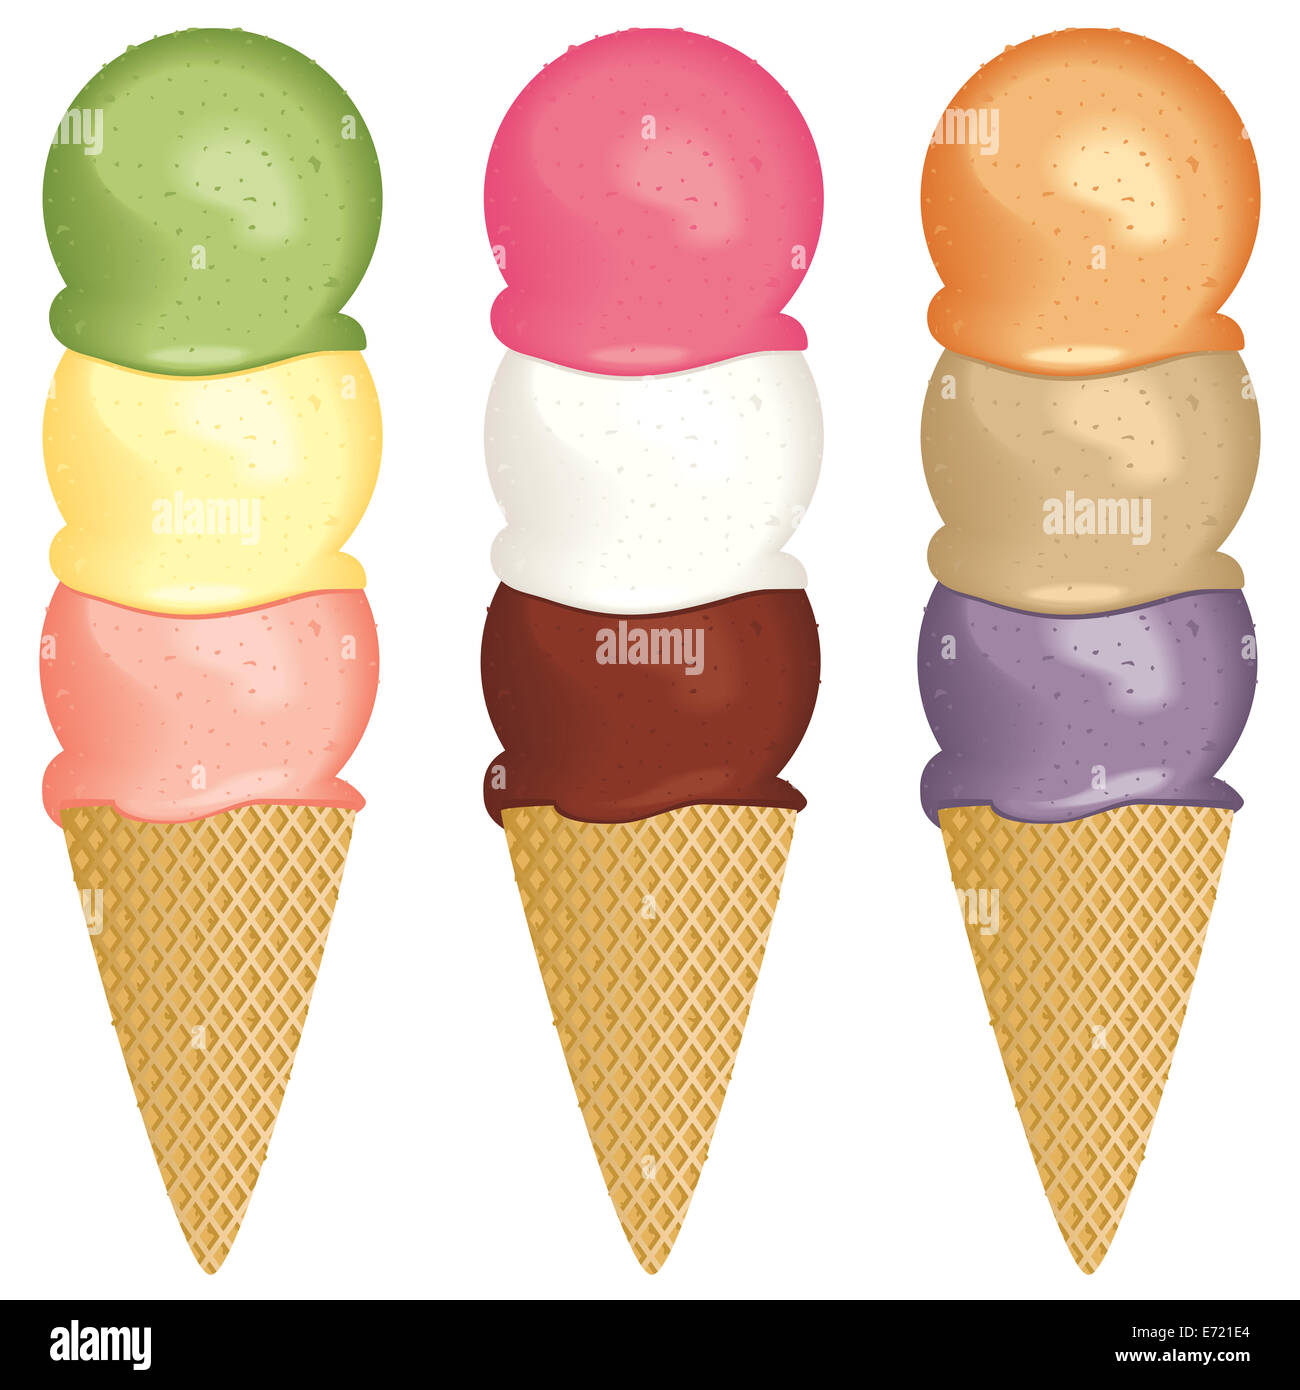 A set of three scoop ice cream cones Stock Photo - Alamy